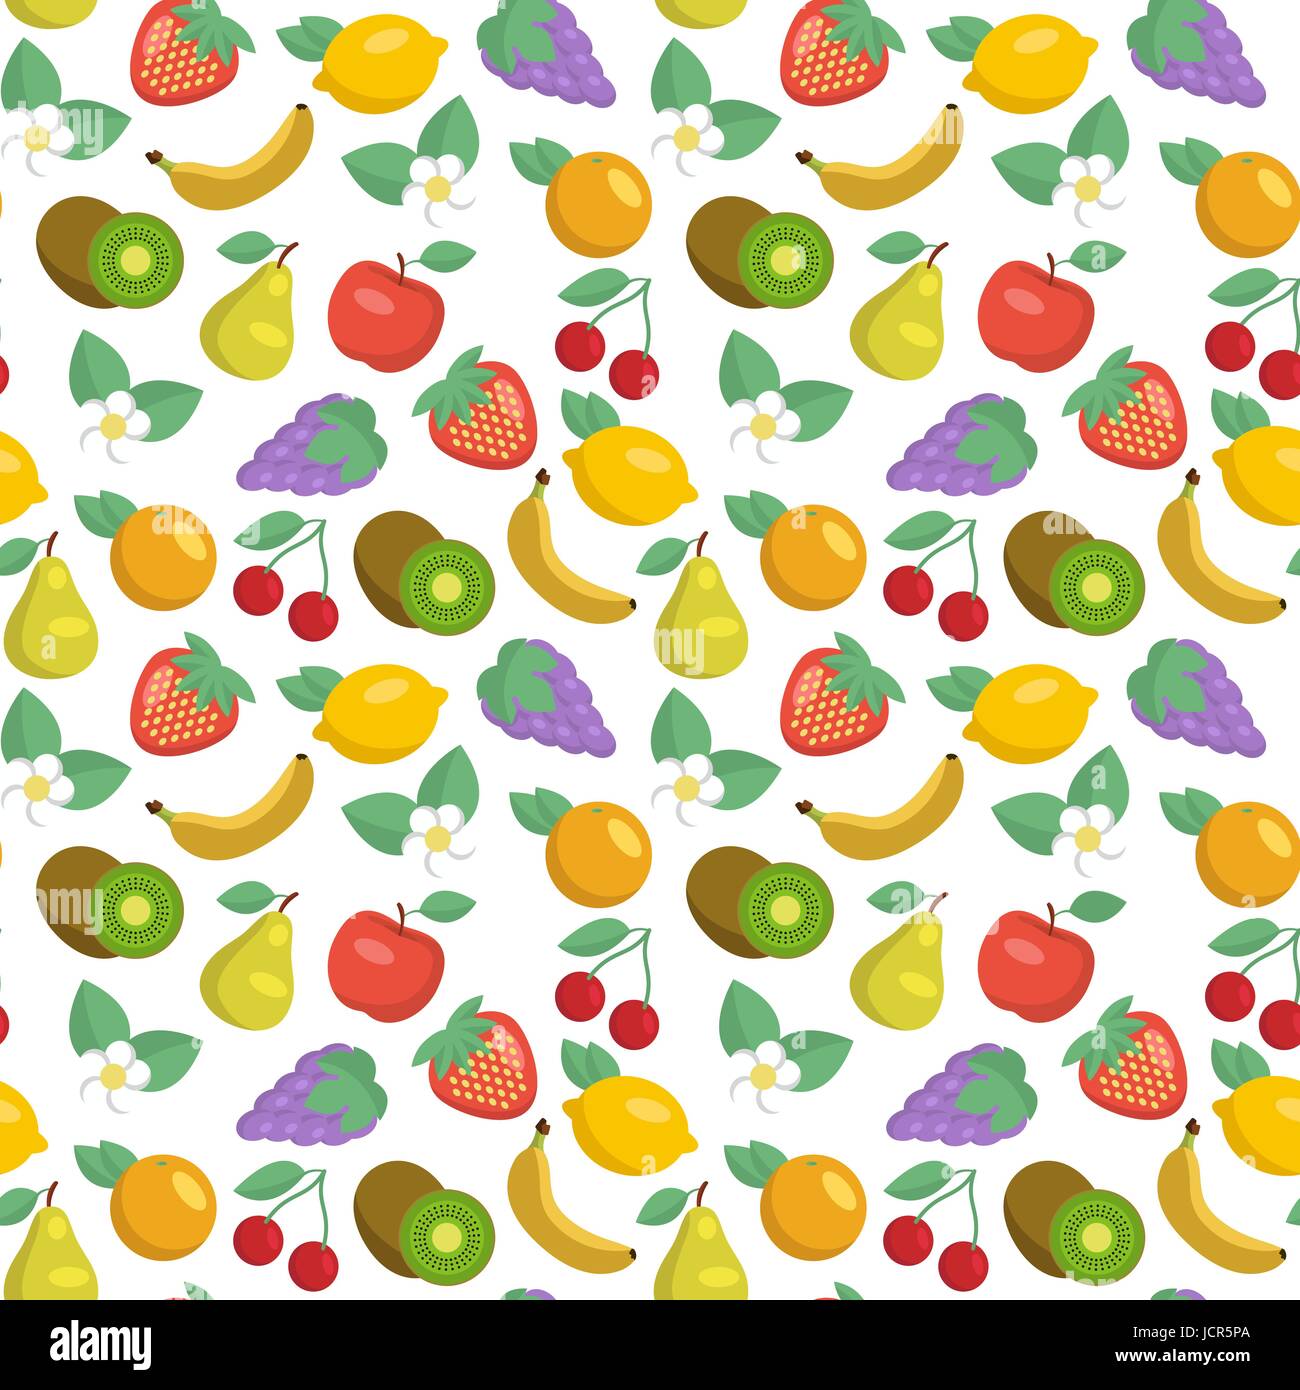 Vector seamless pattern con mele, fragole, limoni, kiwi, uva, banane ciliegie, pere e arance Illustrazione Vettoriale